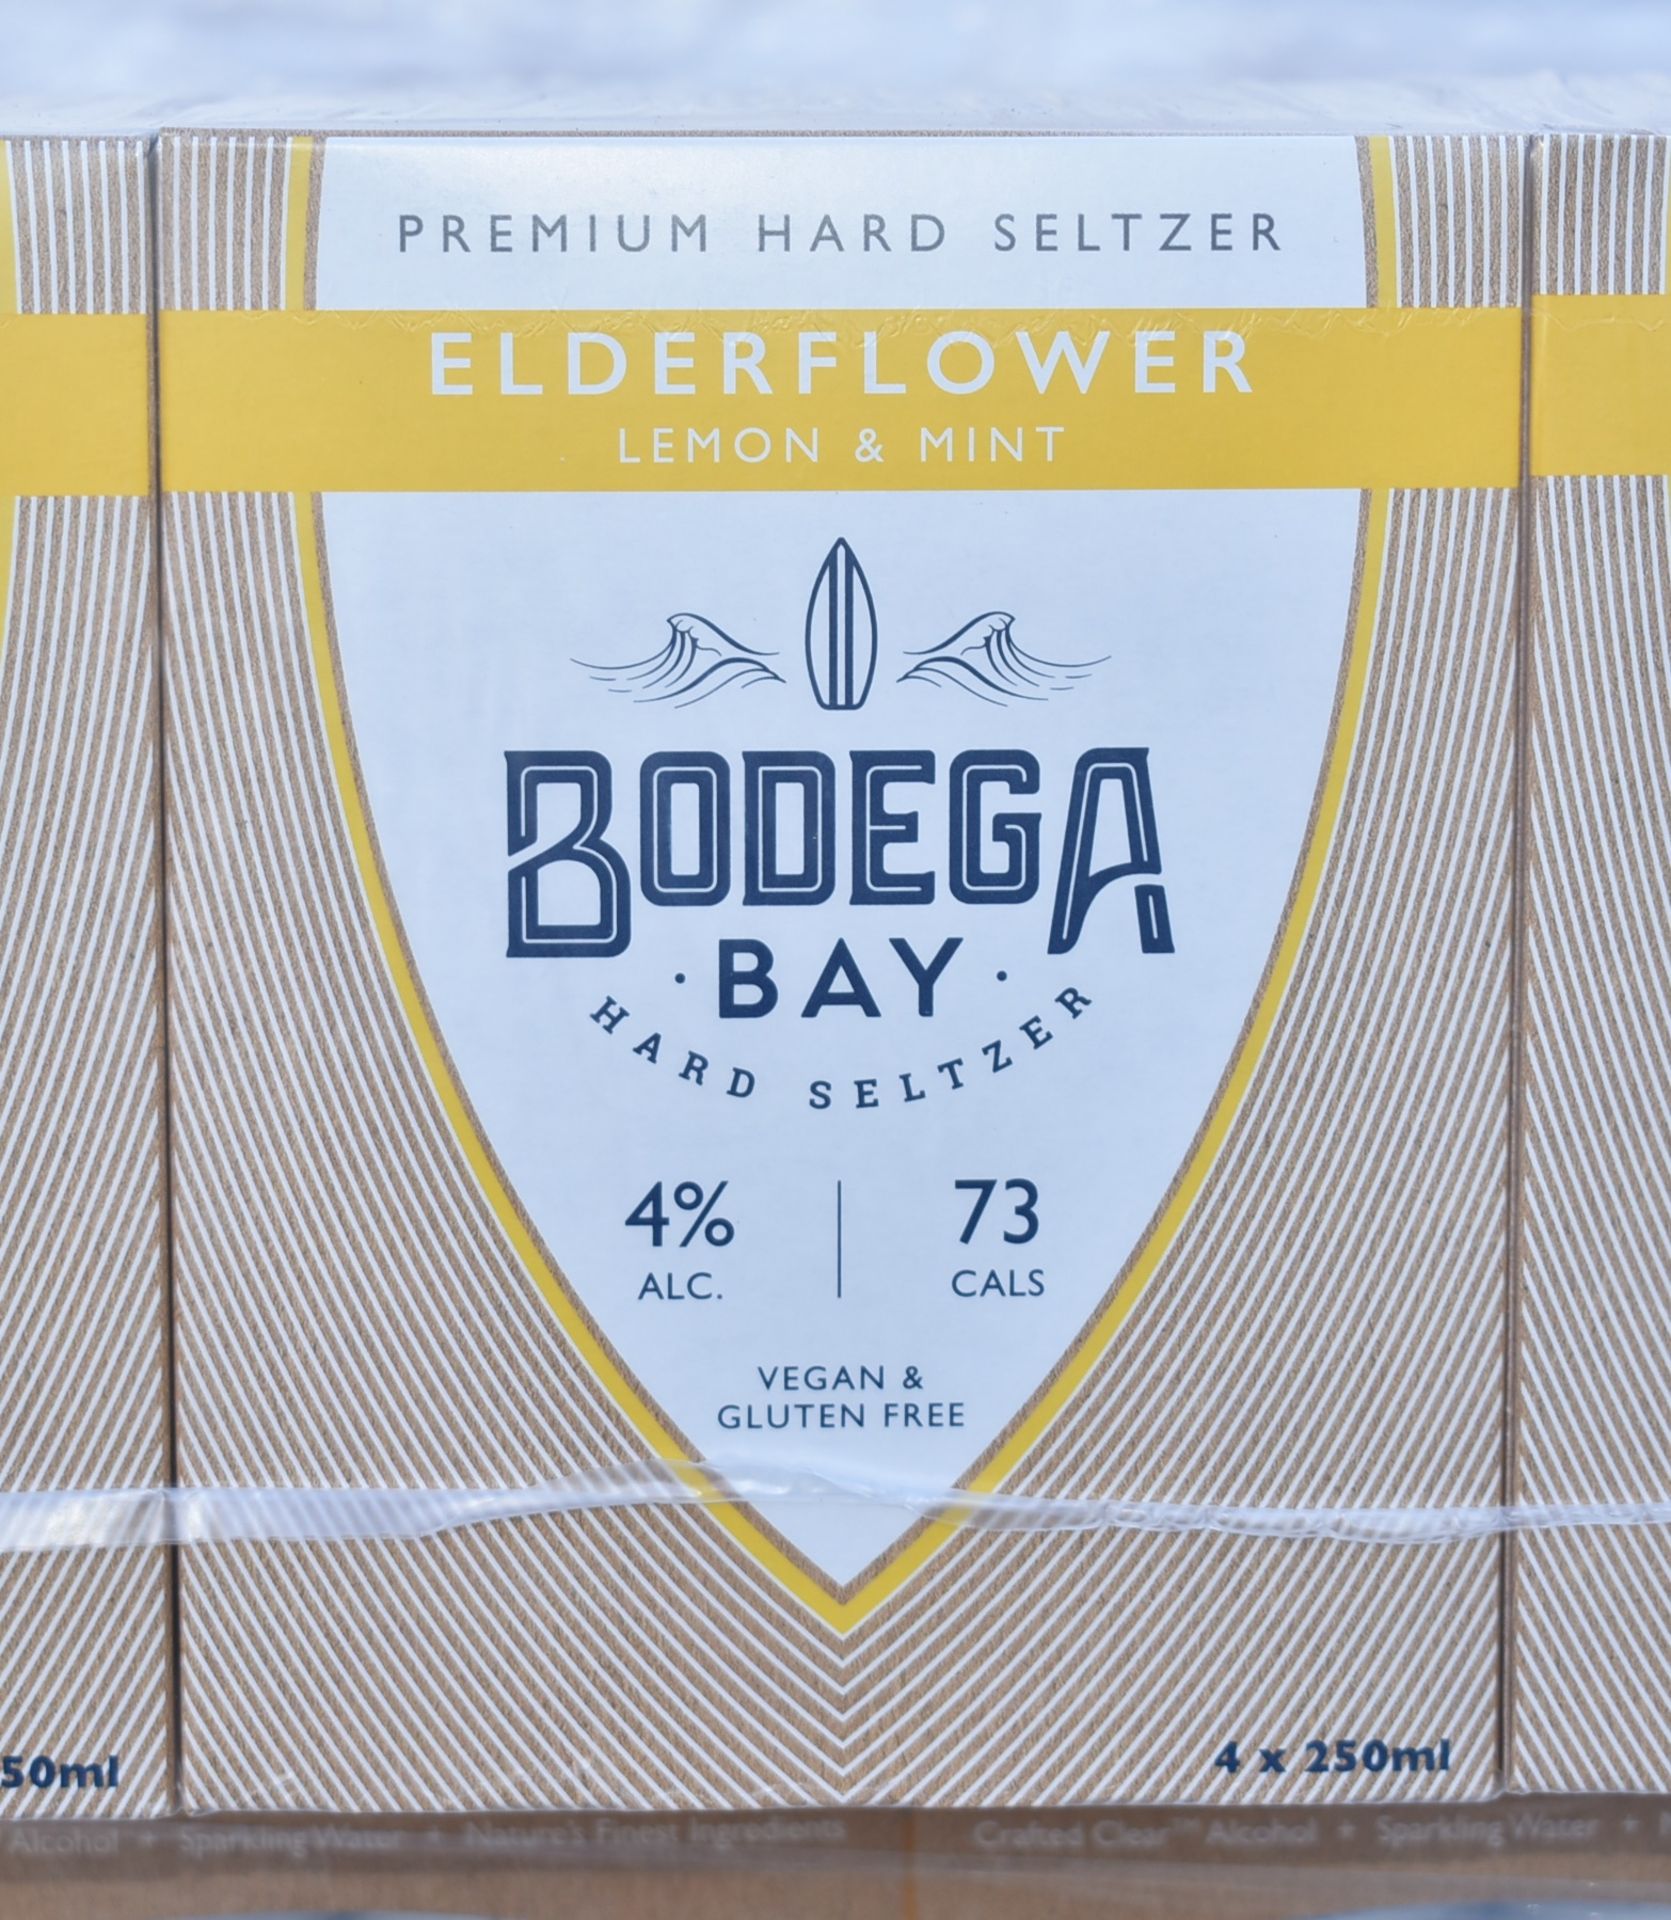 24 x Bodega Bay Hard Seltzer 250ml Alcoholic Sparkling Water Drinks - Elderflower Lemon & Mint - - Image 7 of 7